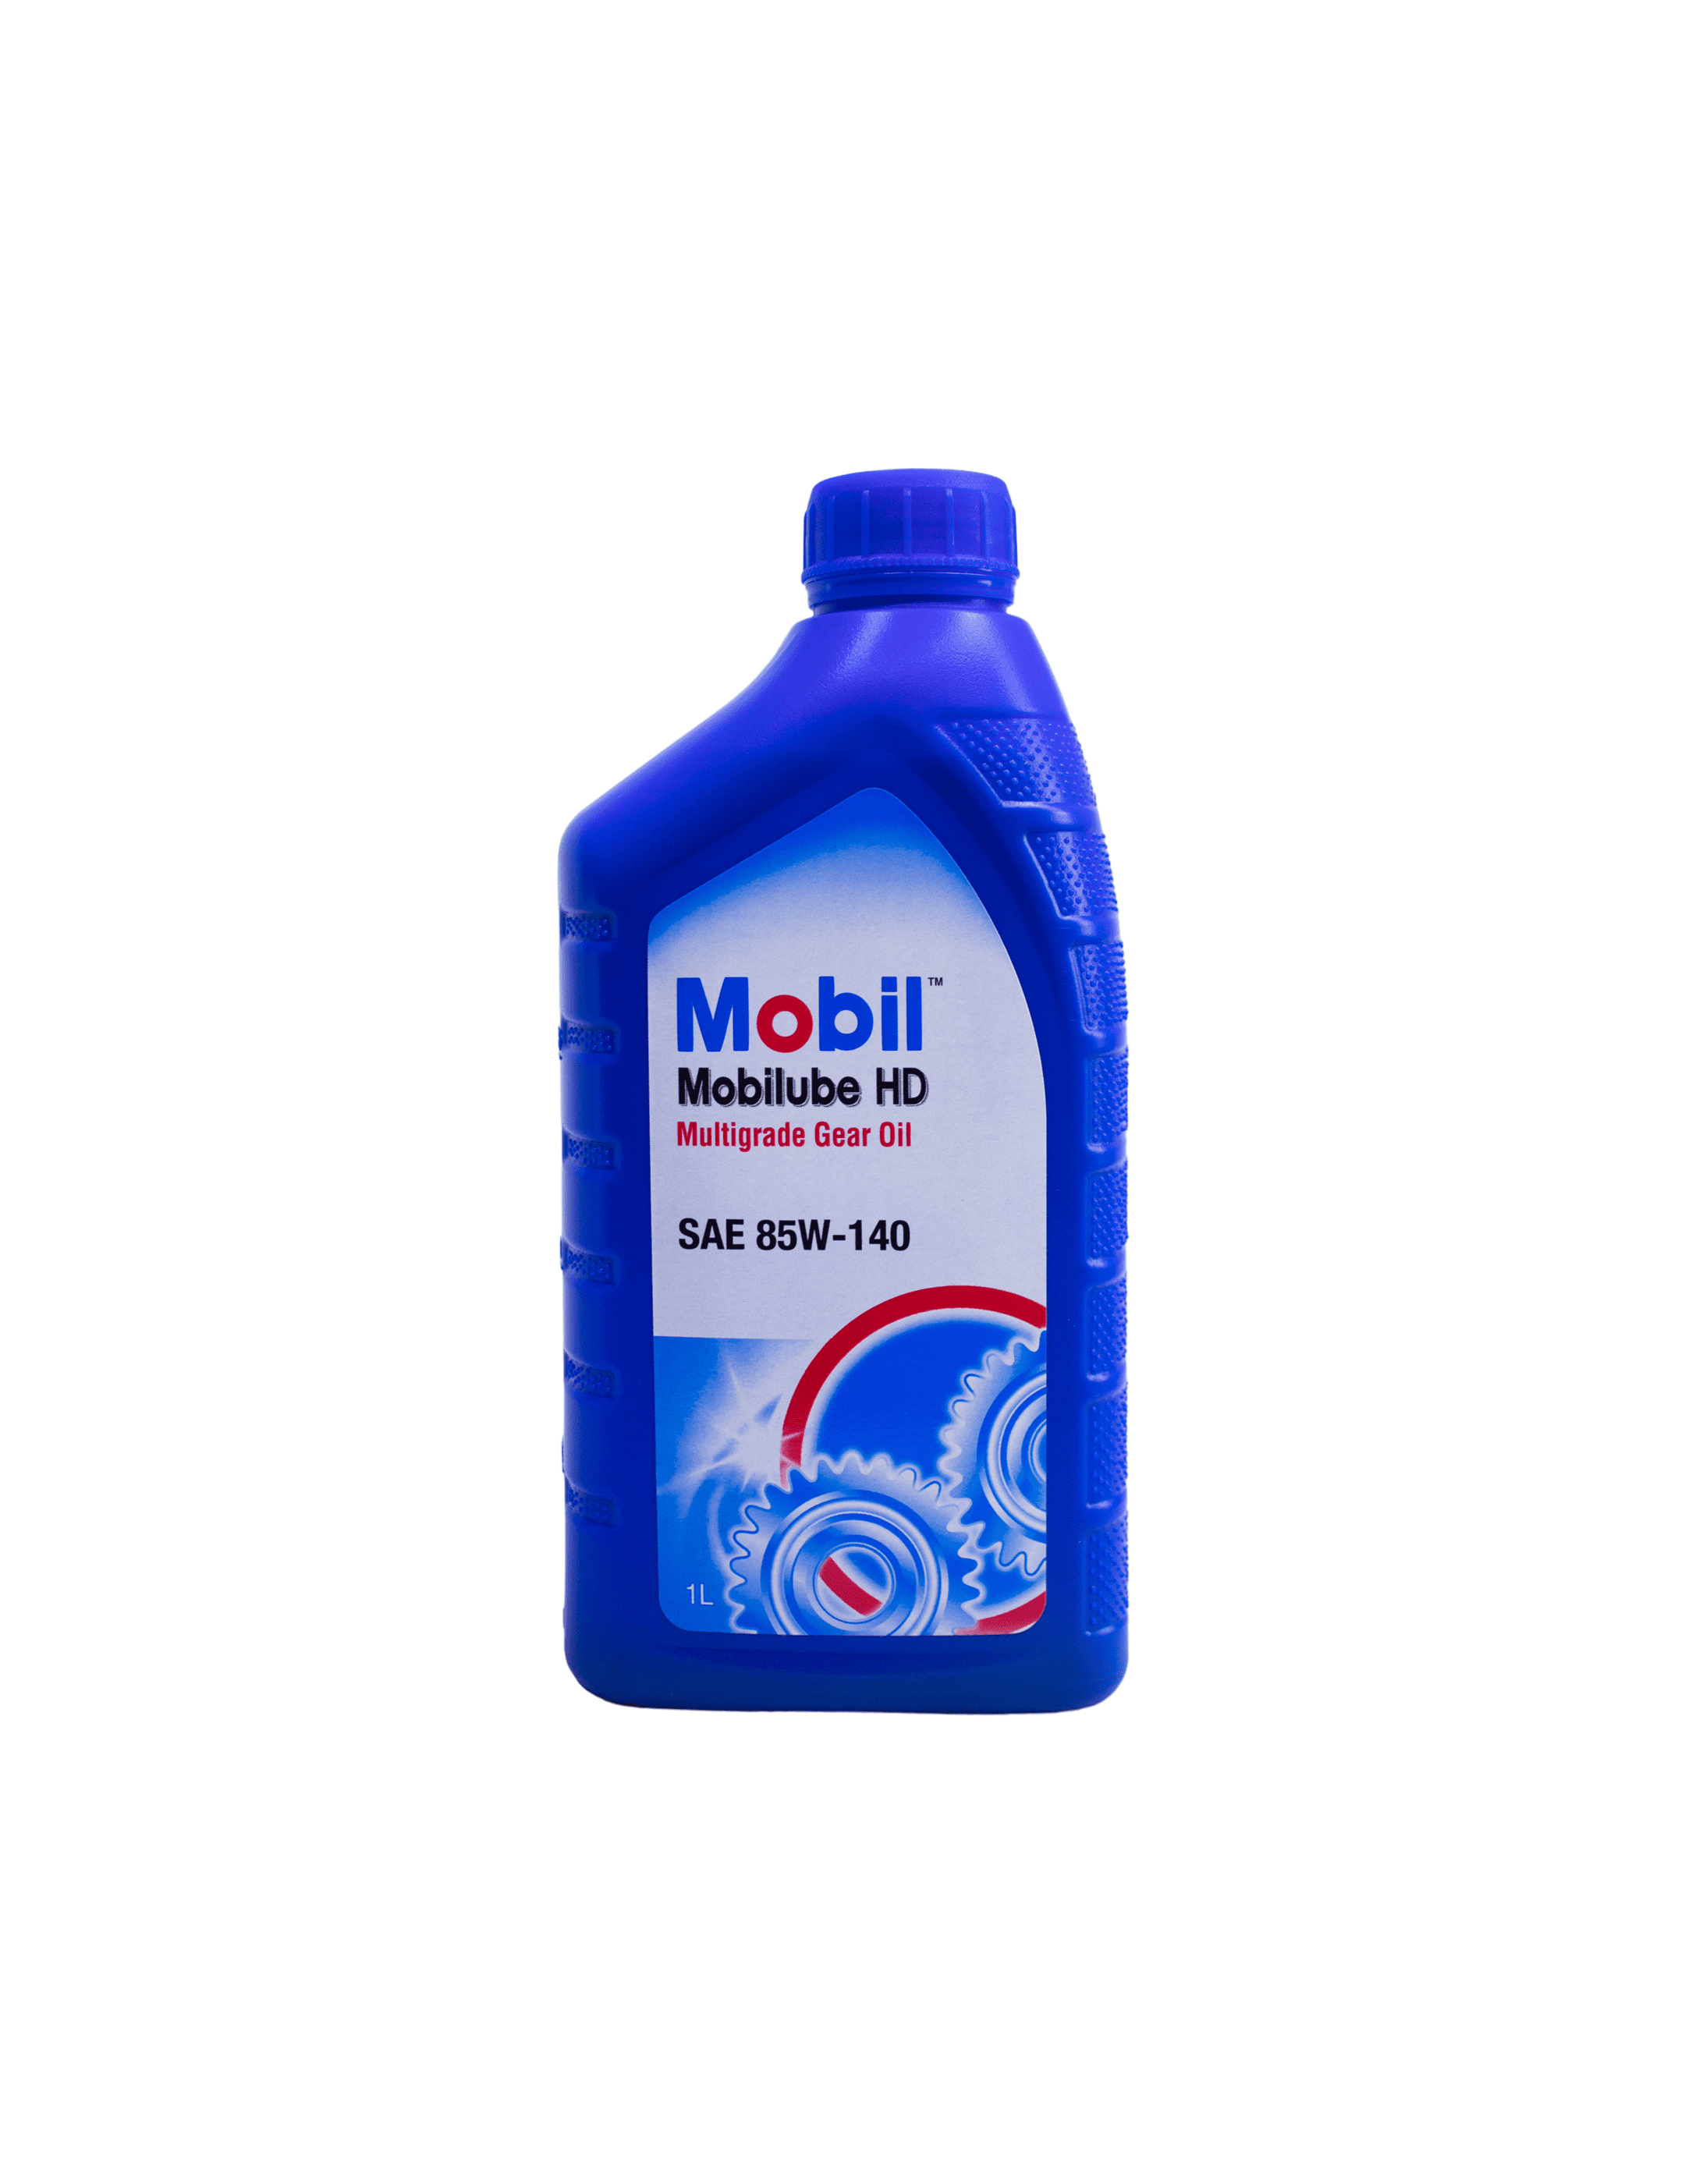 MOBIL MOBILUBE HD 85W-140 GL-5 0.946L